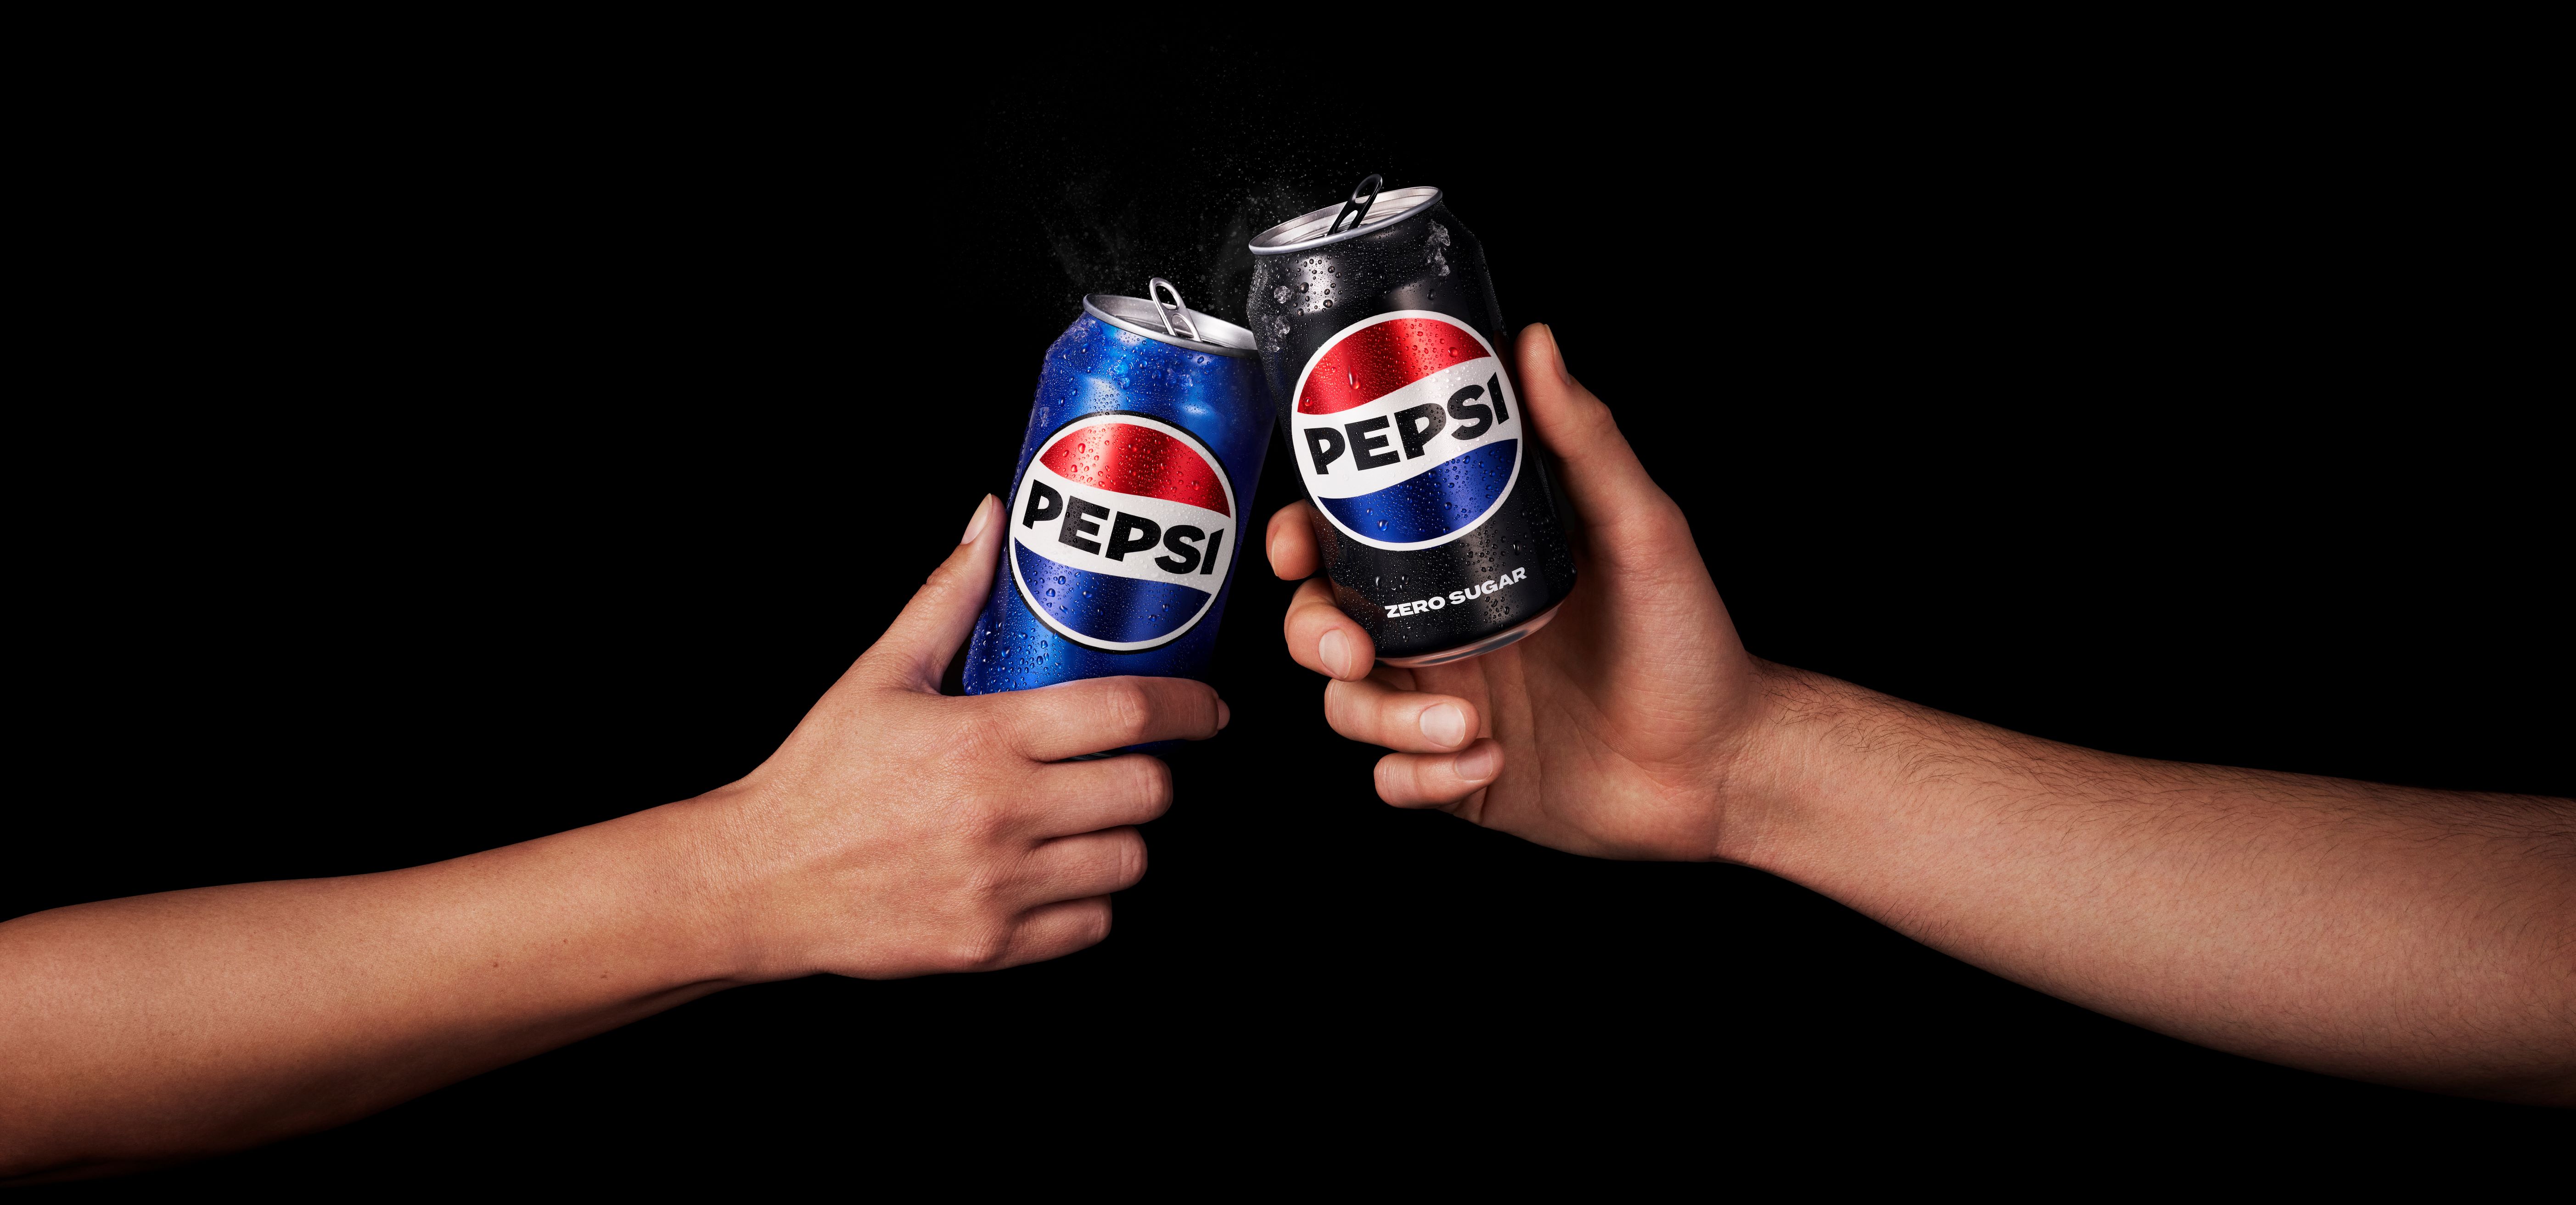 Nowe logo Pepsi wkracza na sklepowe półki. Zmienia się także nazwa Pepsi Max